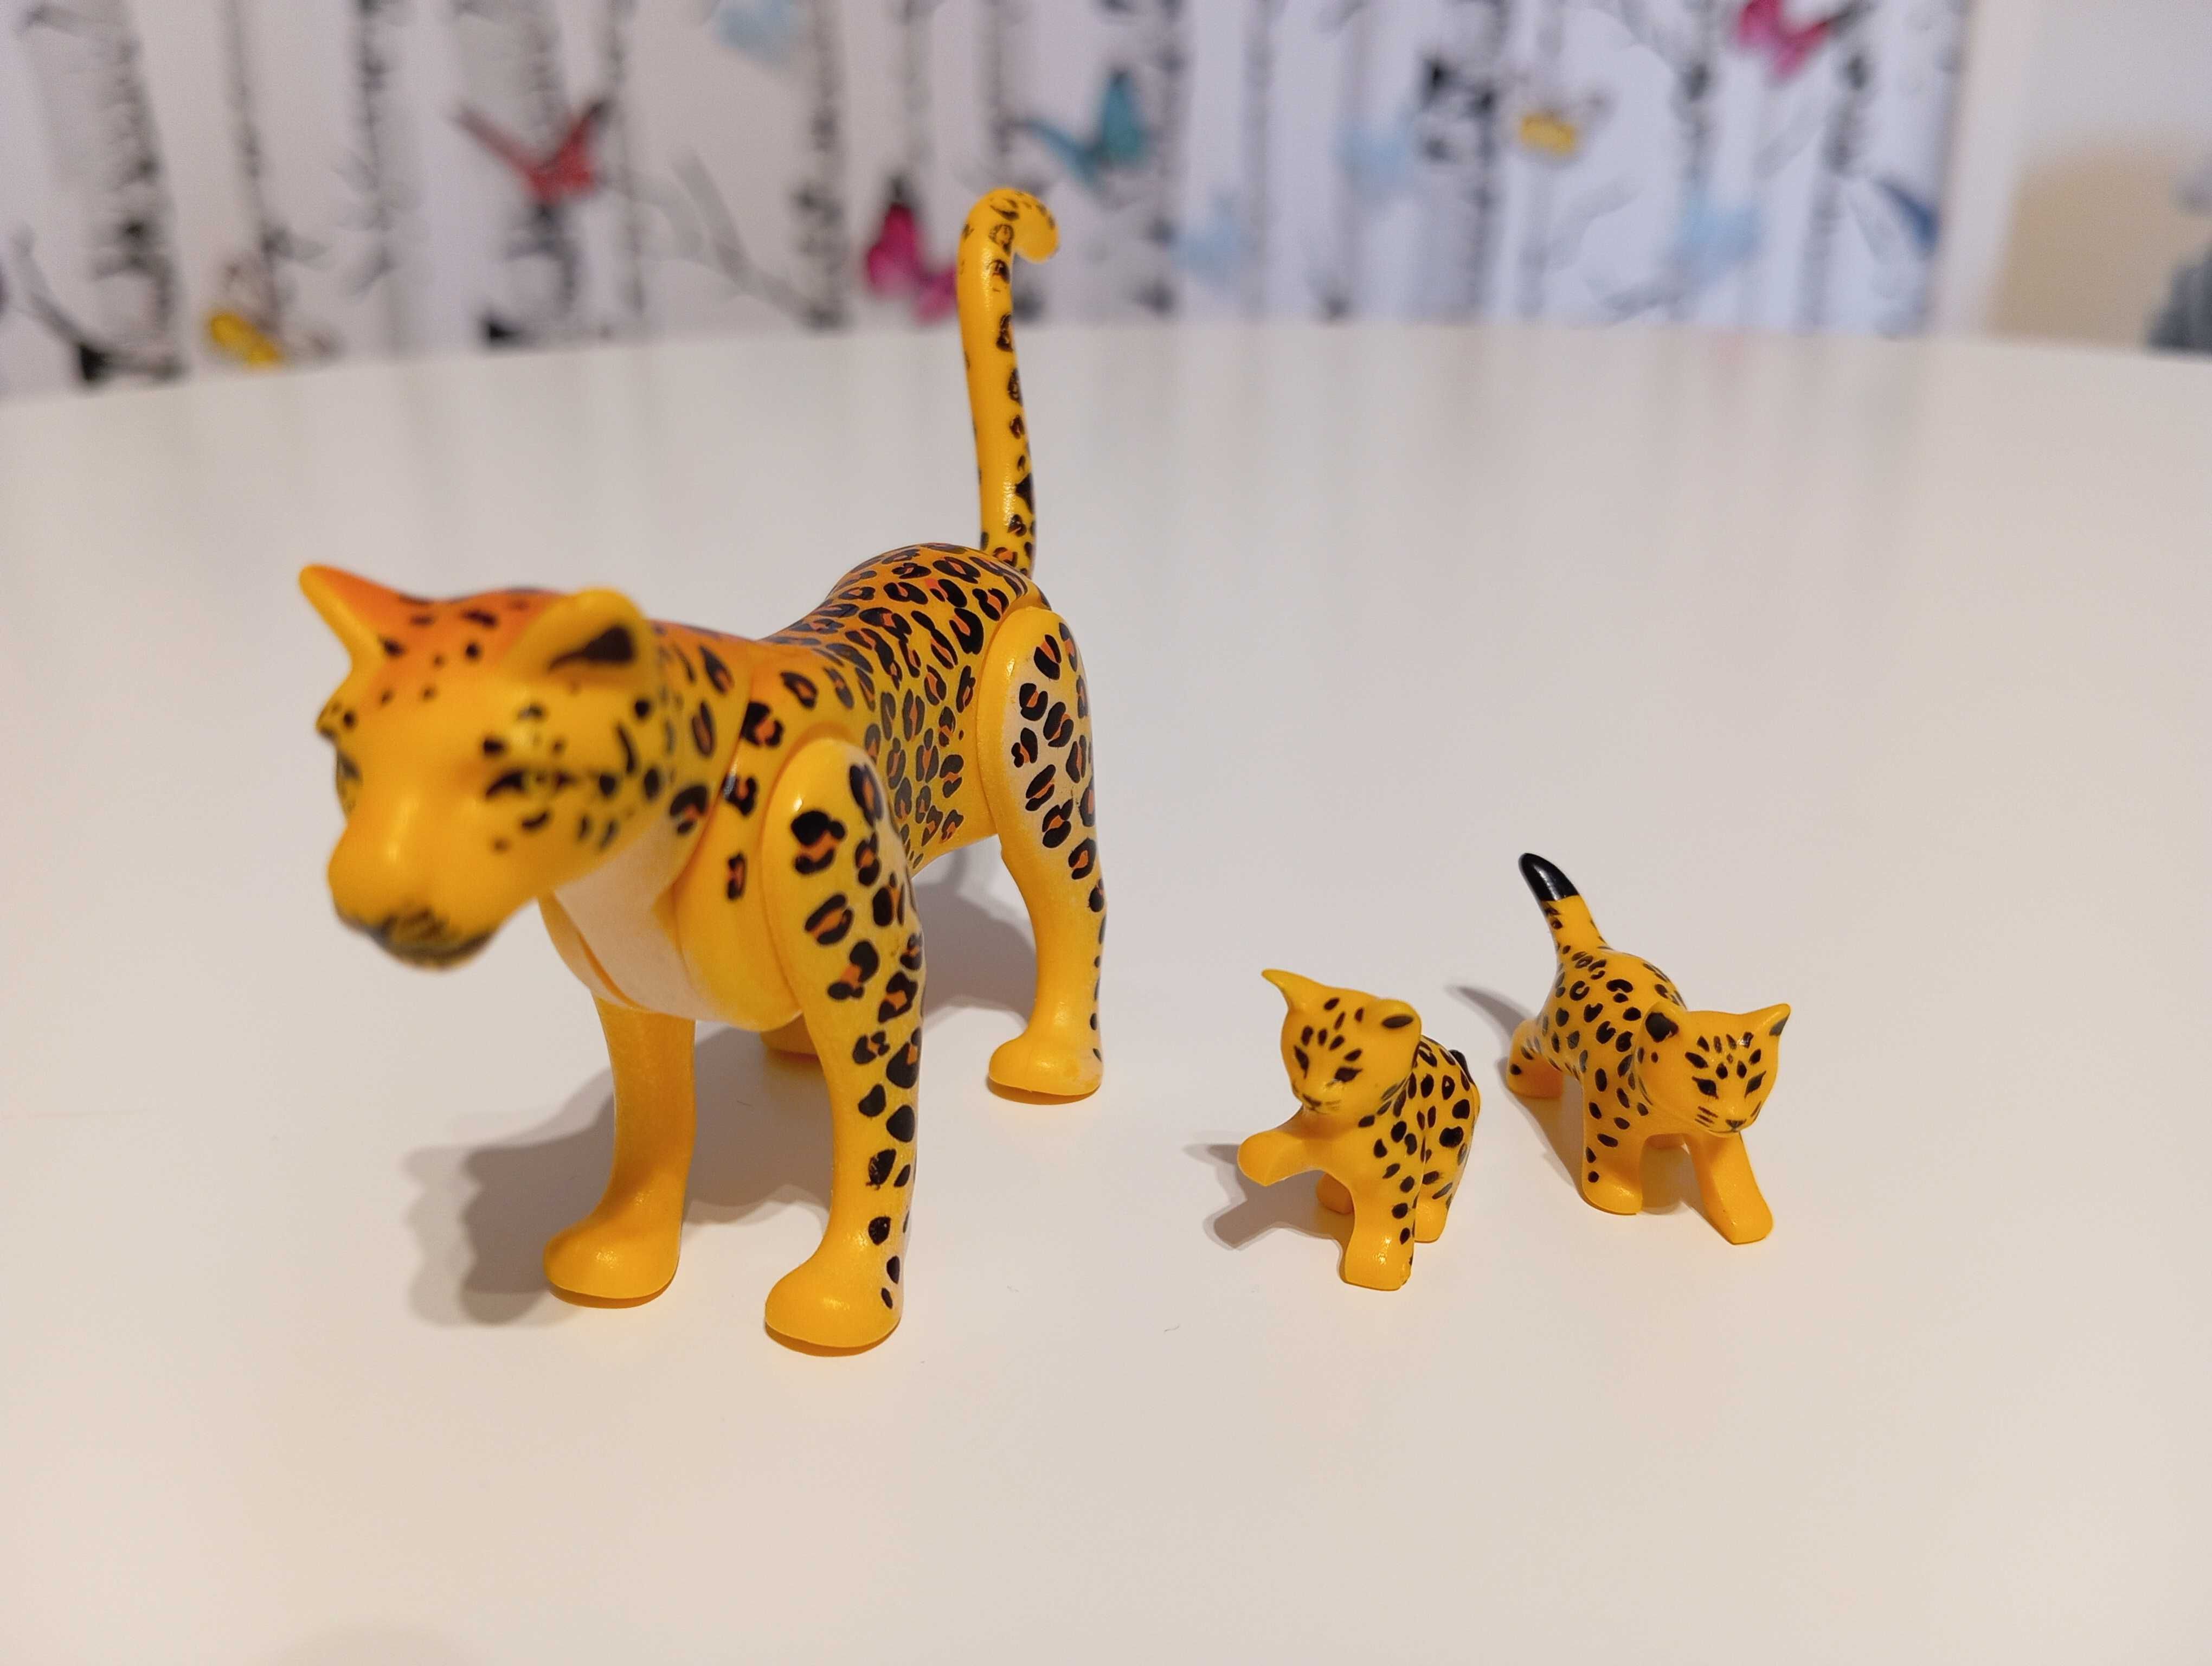 Zestaw playmobil rodzina gepardy, stan jak nowy